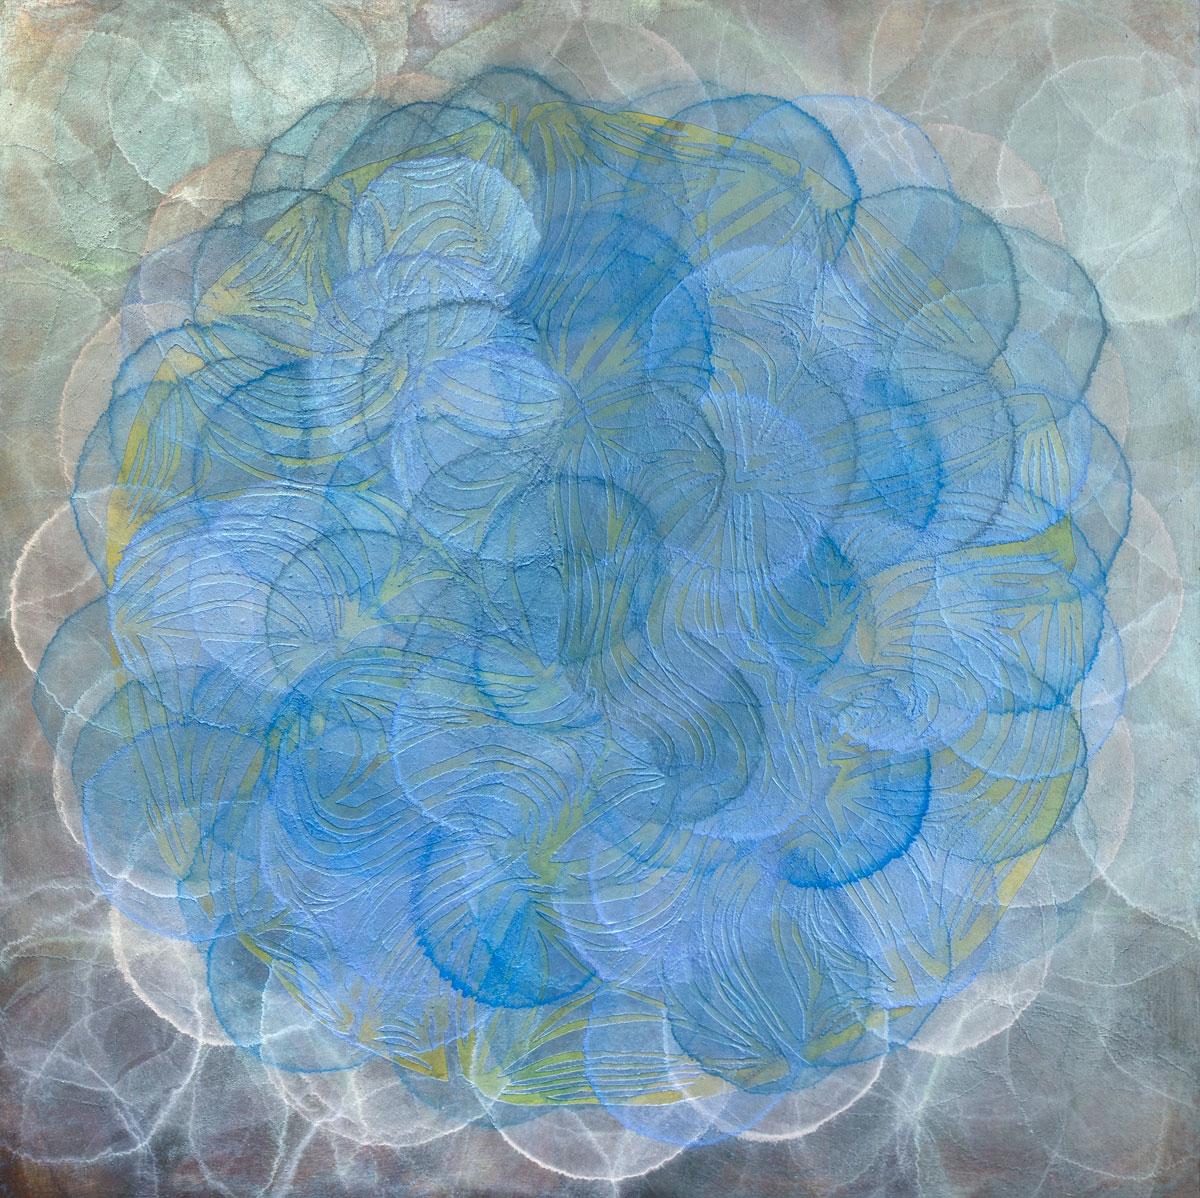 Cette impression abstraite contemporaine en édition limitée de Roger Mudre présente une palette de tons froids. Des cercles aux contours clairs se superposent dans des tons variés de bleu, vert et blanc pour créer une forme circulaire bleue plus